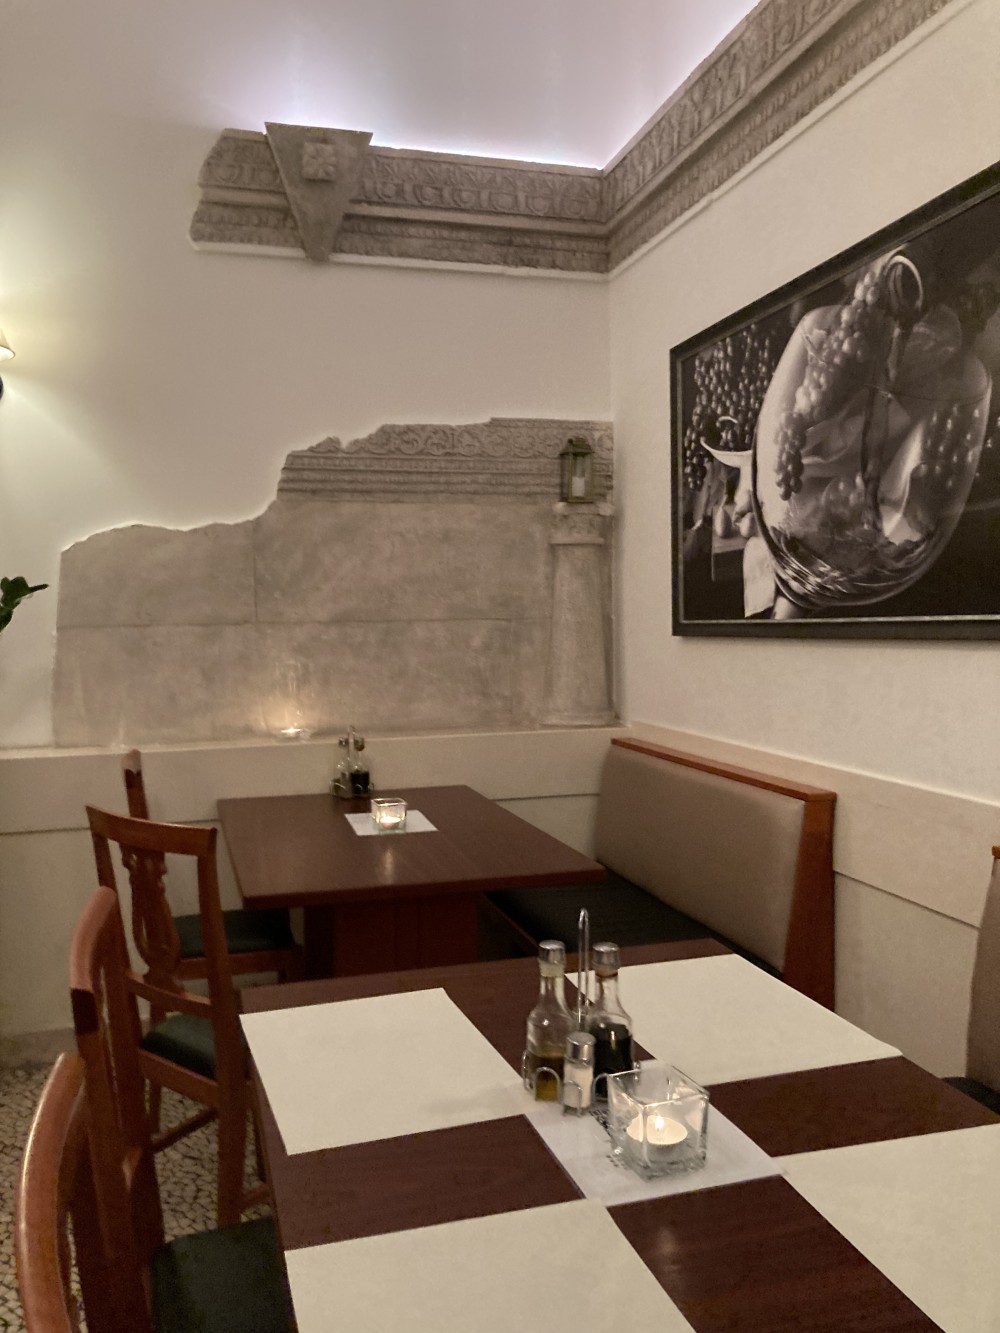 Plaka Restaurant & Weinbar – Der Grieche beim Graben - Wien